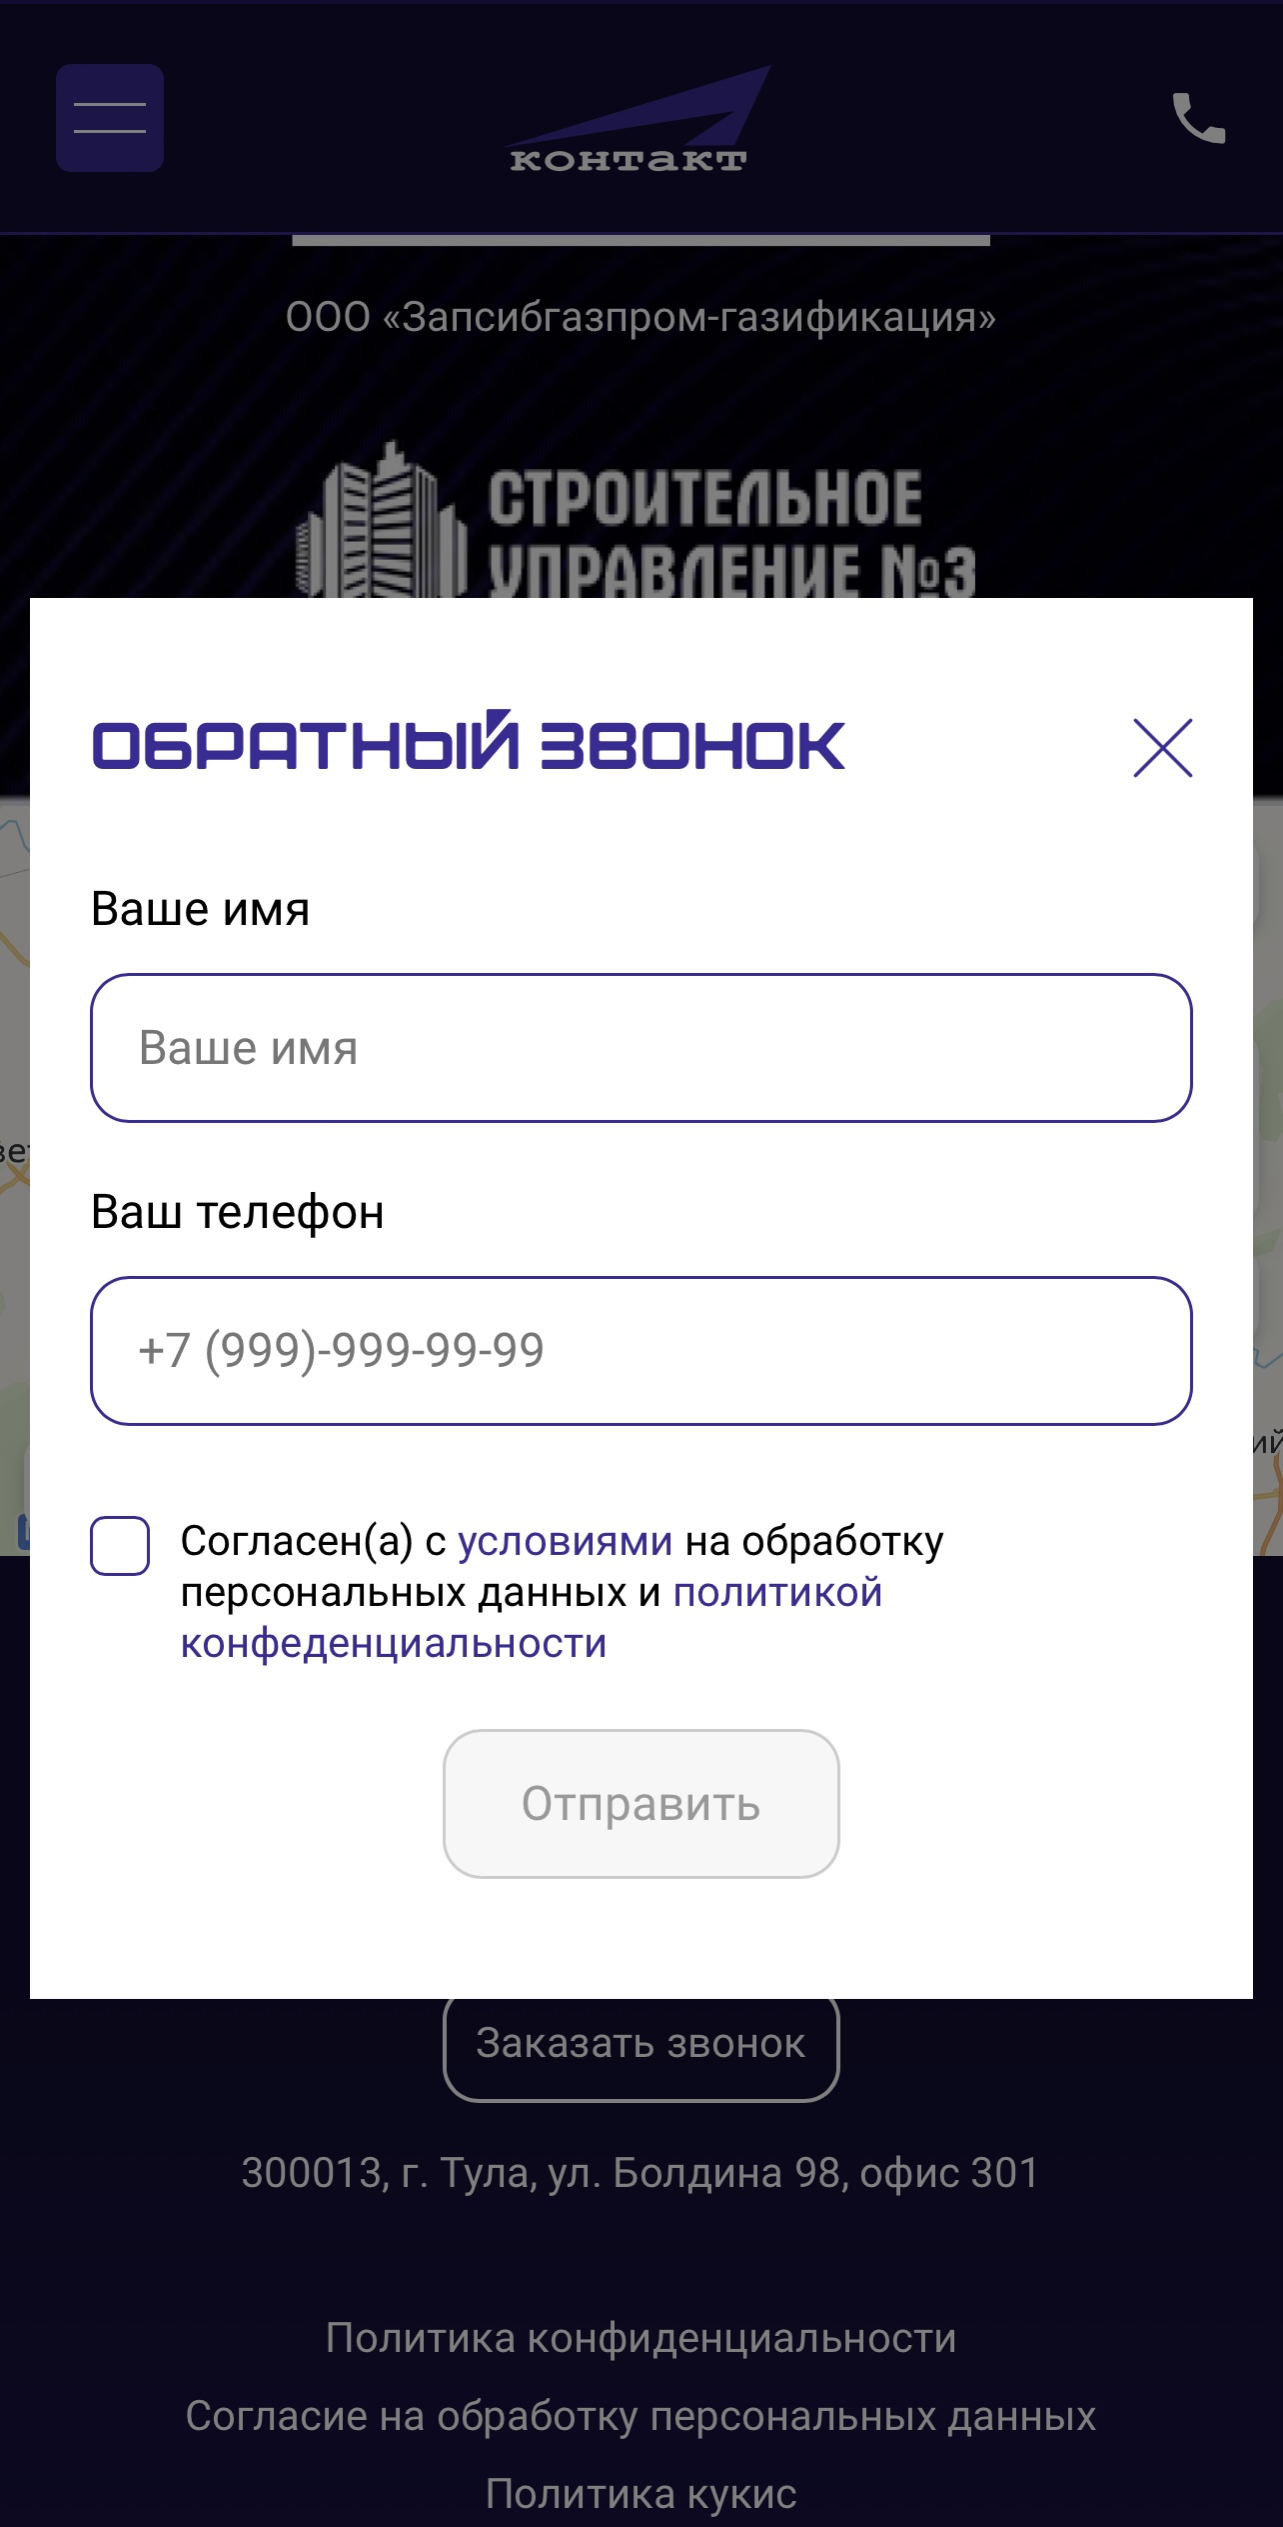 bestkontakt.ru / 